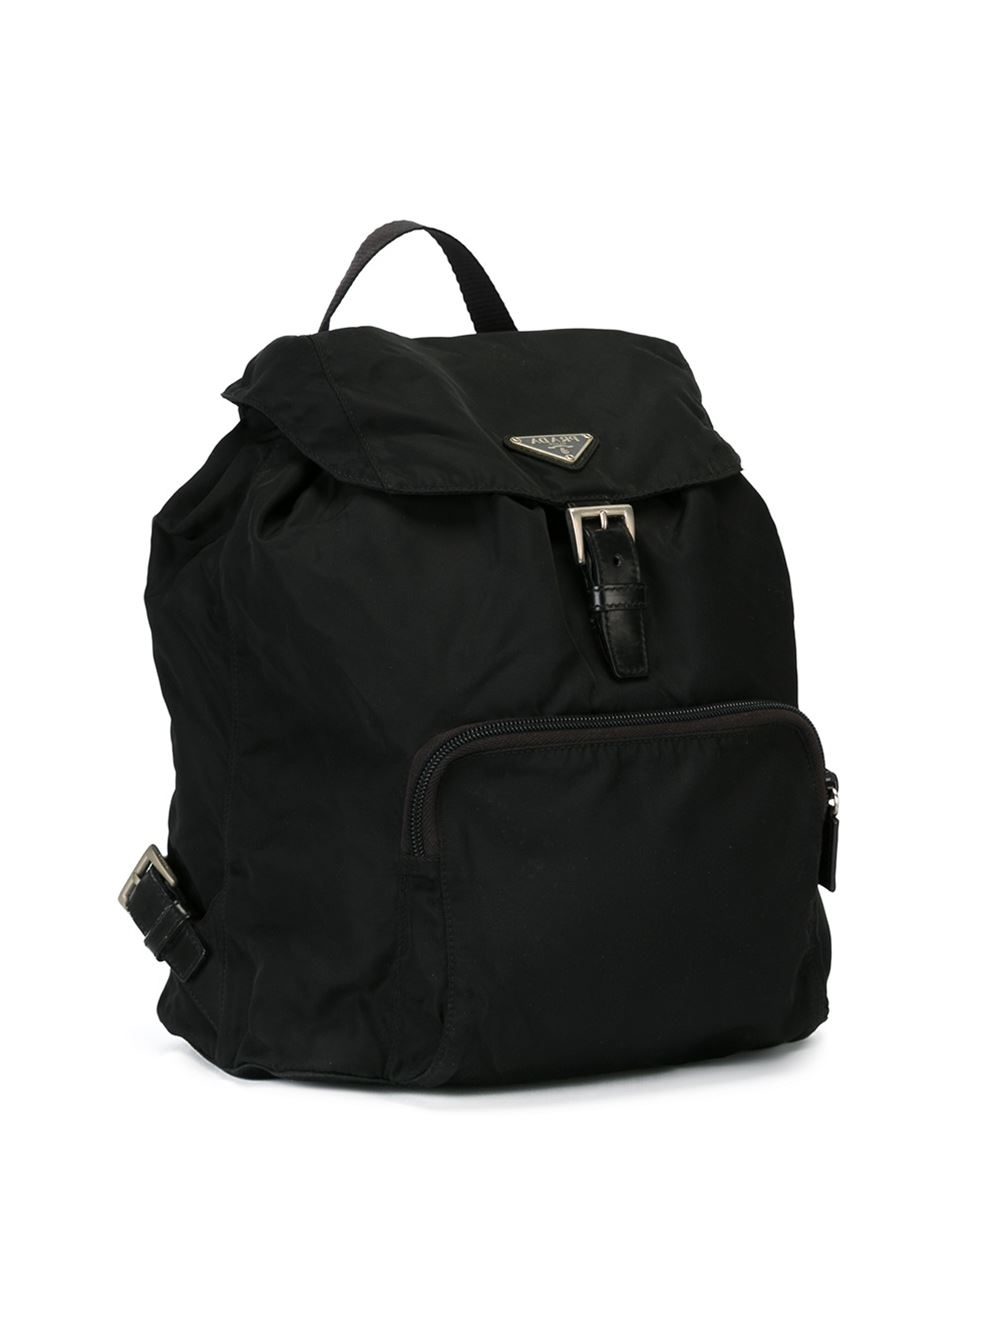 prada classic backpack